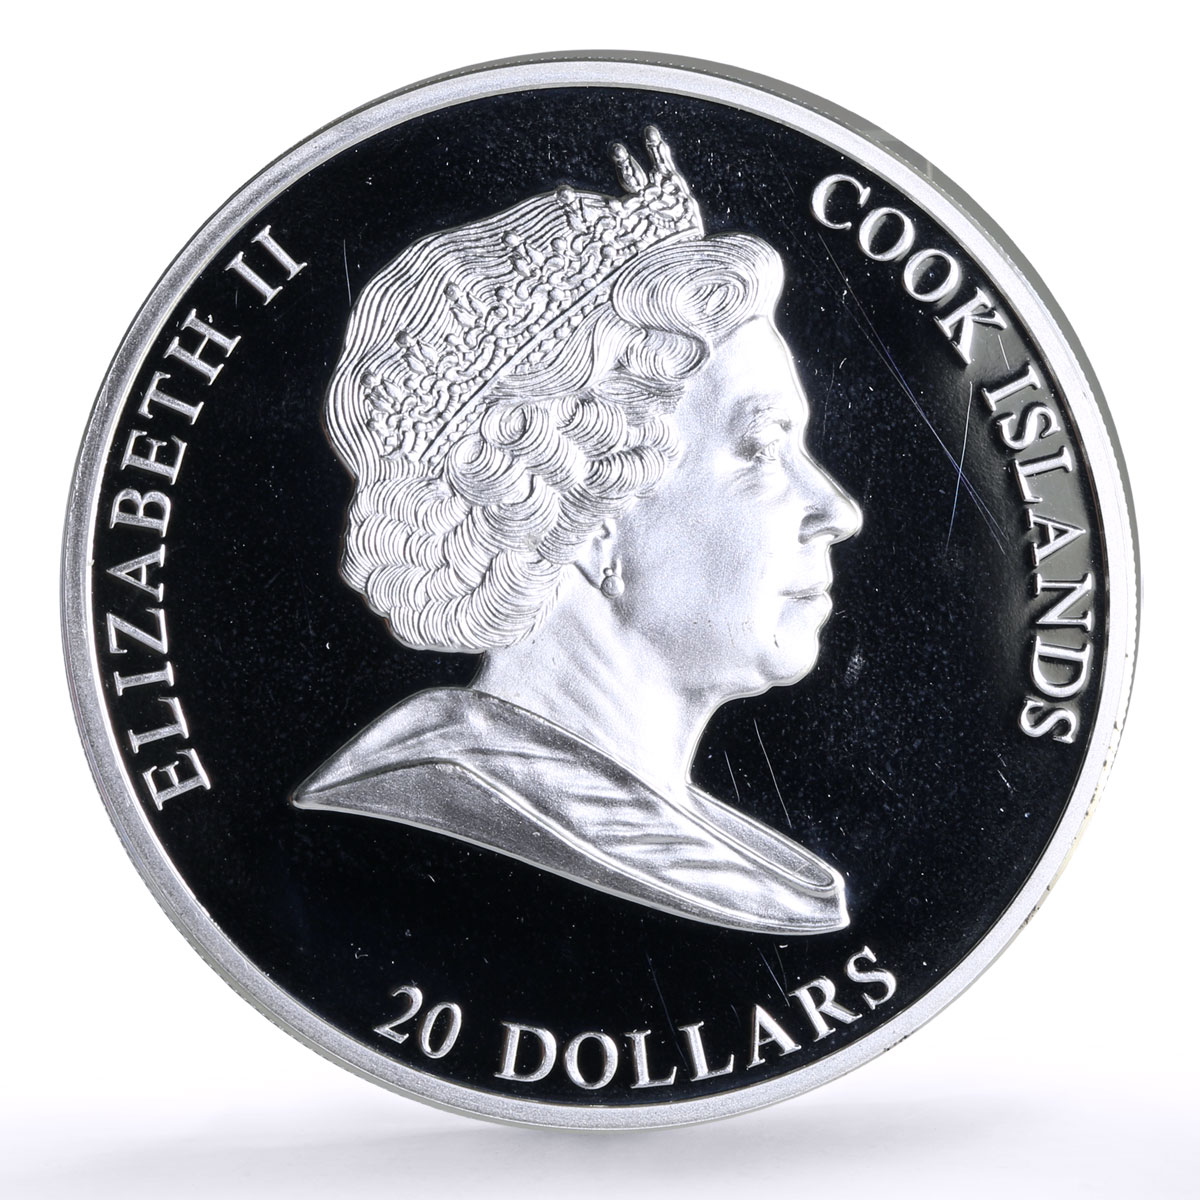 Cook Islands 20 $ Viktor Vasnetsov Art Bogatyrs Missing Crystal silver coin 2010